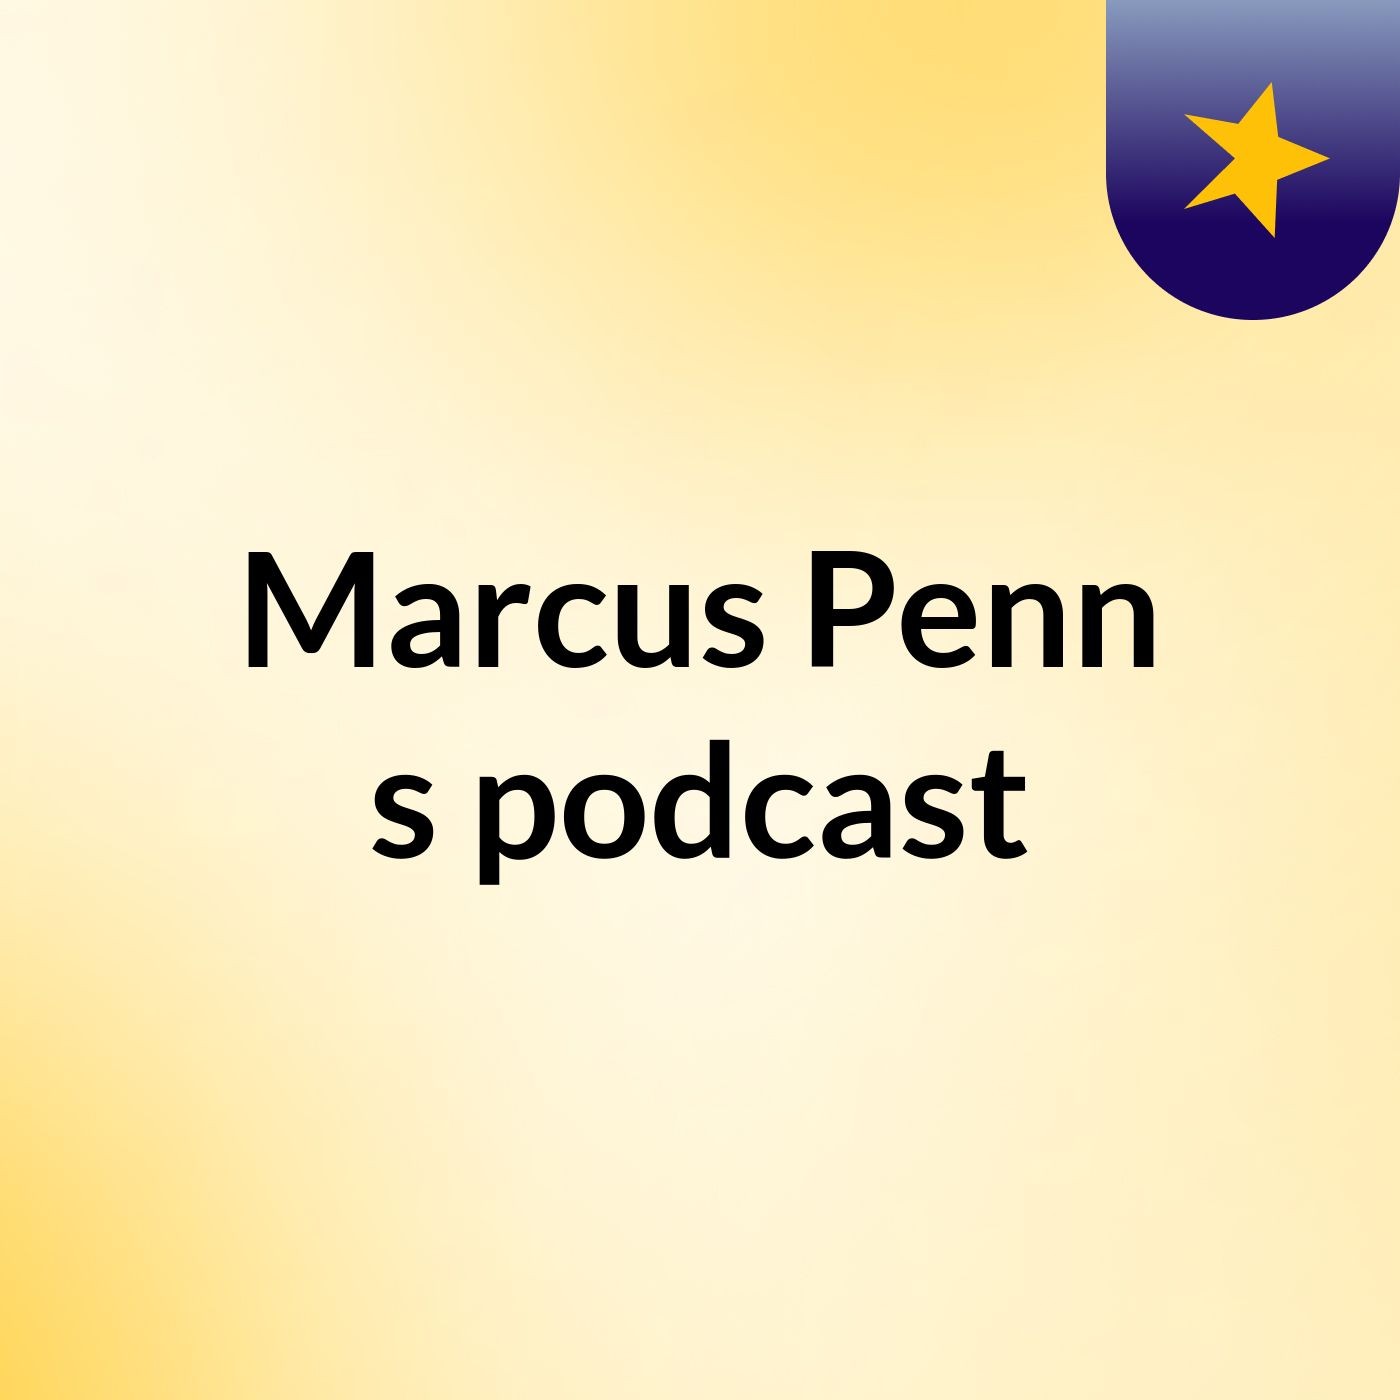 Marcus Penn's podcast